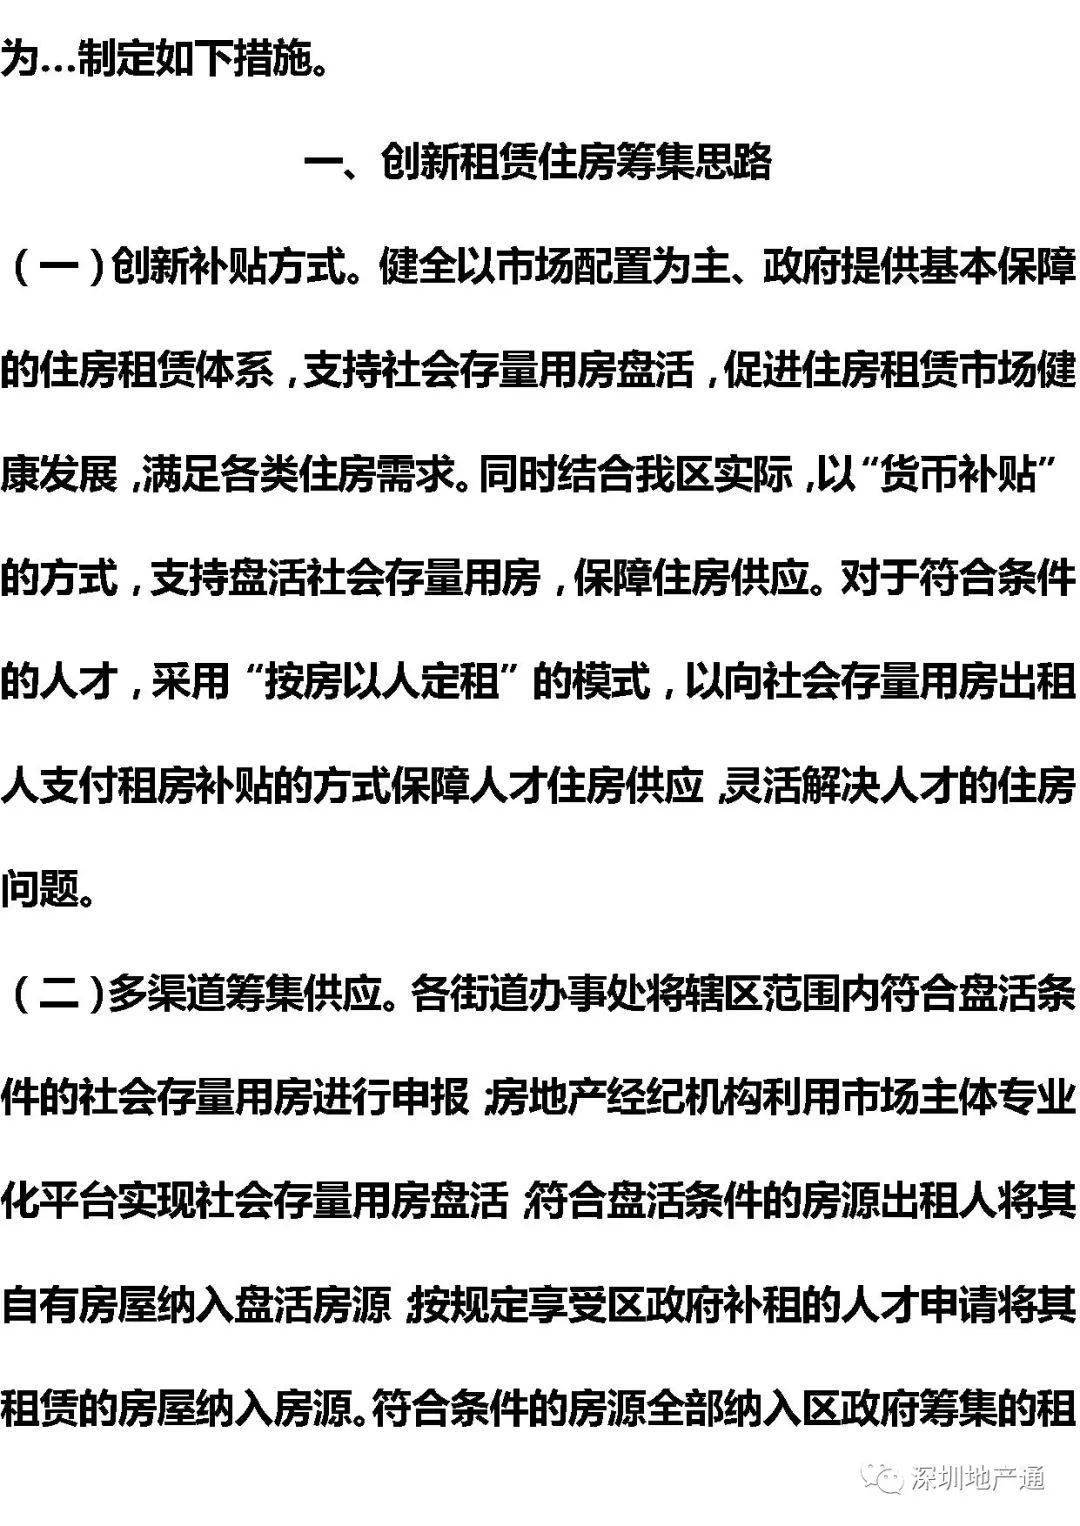 最新房产新闻 政策_苏州最新房产限购政策_2017杭州最新房产政策